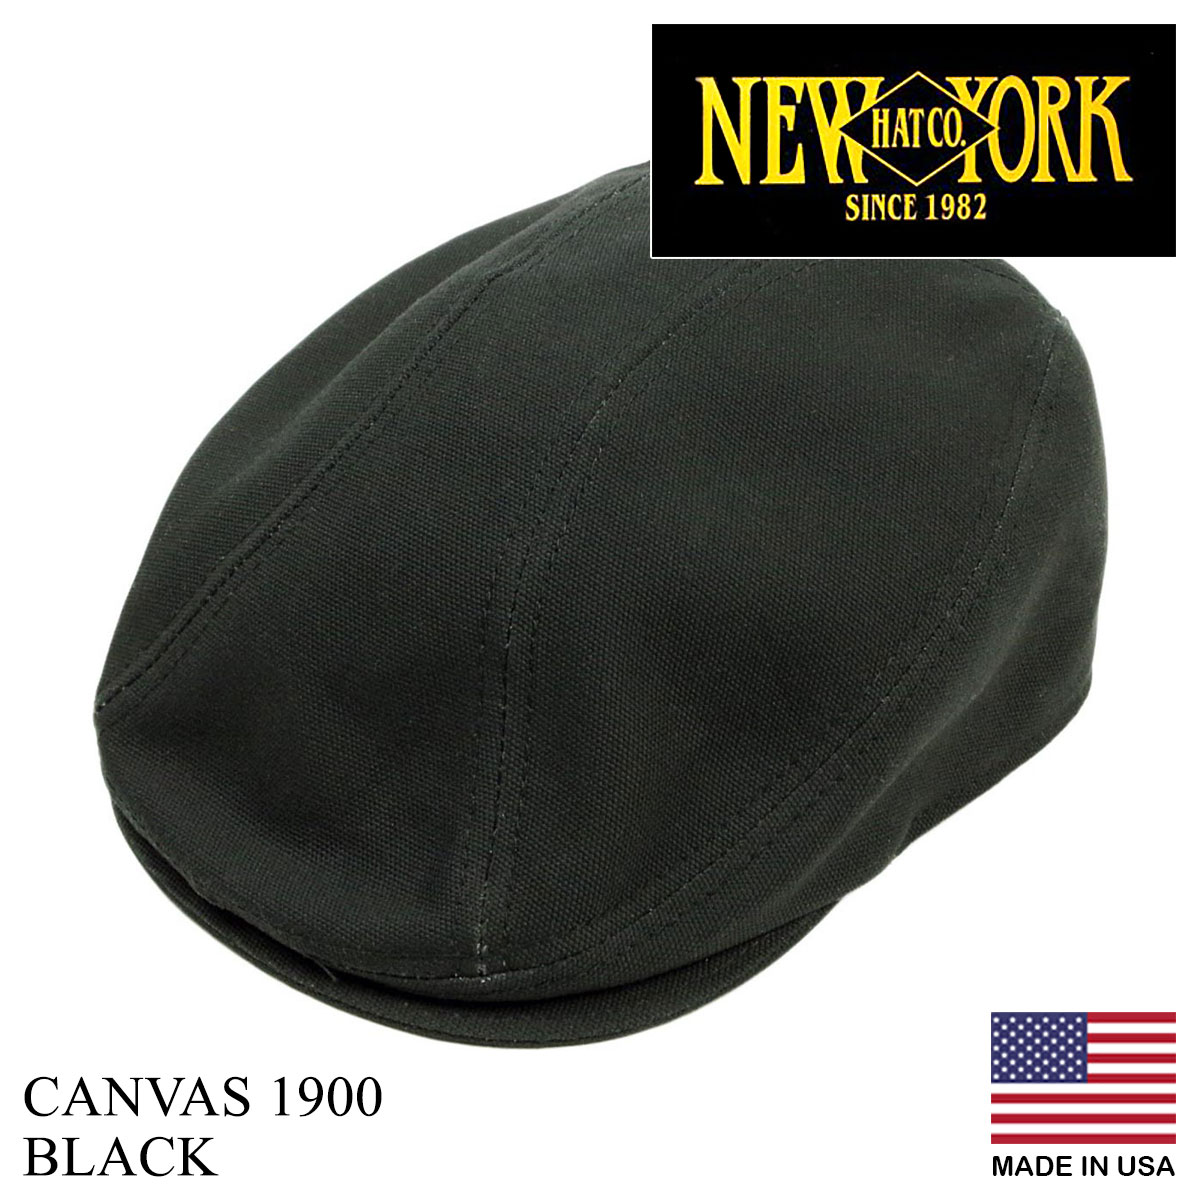 ニューヨークハット NEWYORK HAT ハンチング キャンバス 1900 帽子 アメリカ製 米国製 CANVAS 1900